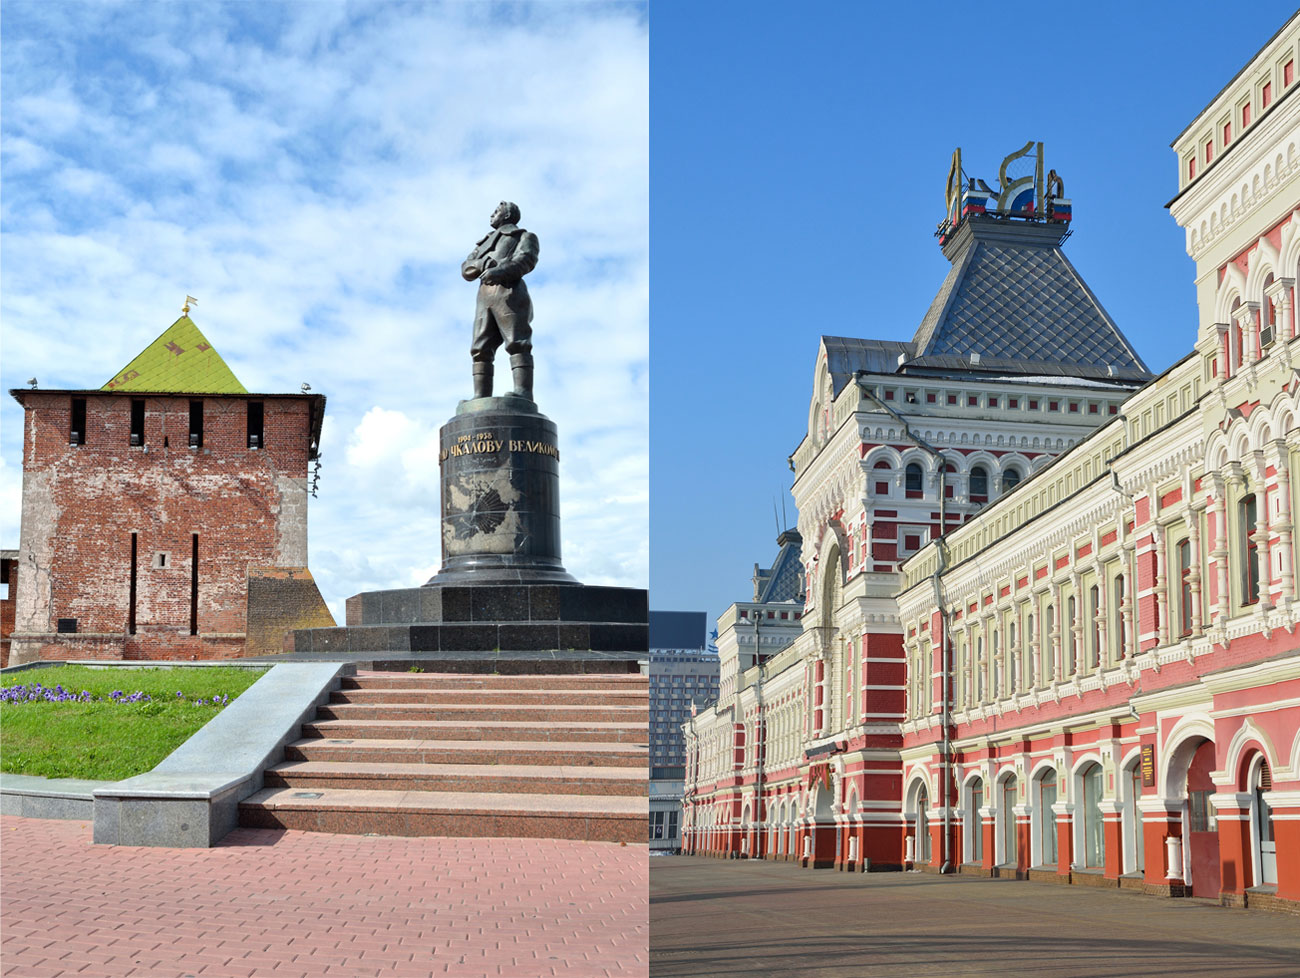 Нижни Новгород, още един град на р. Волга, е известен с паметника на пилота-пионер Валерий Чкалов и очарователната барокова сграда на местния панаир.